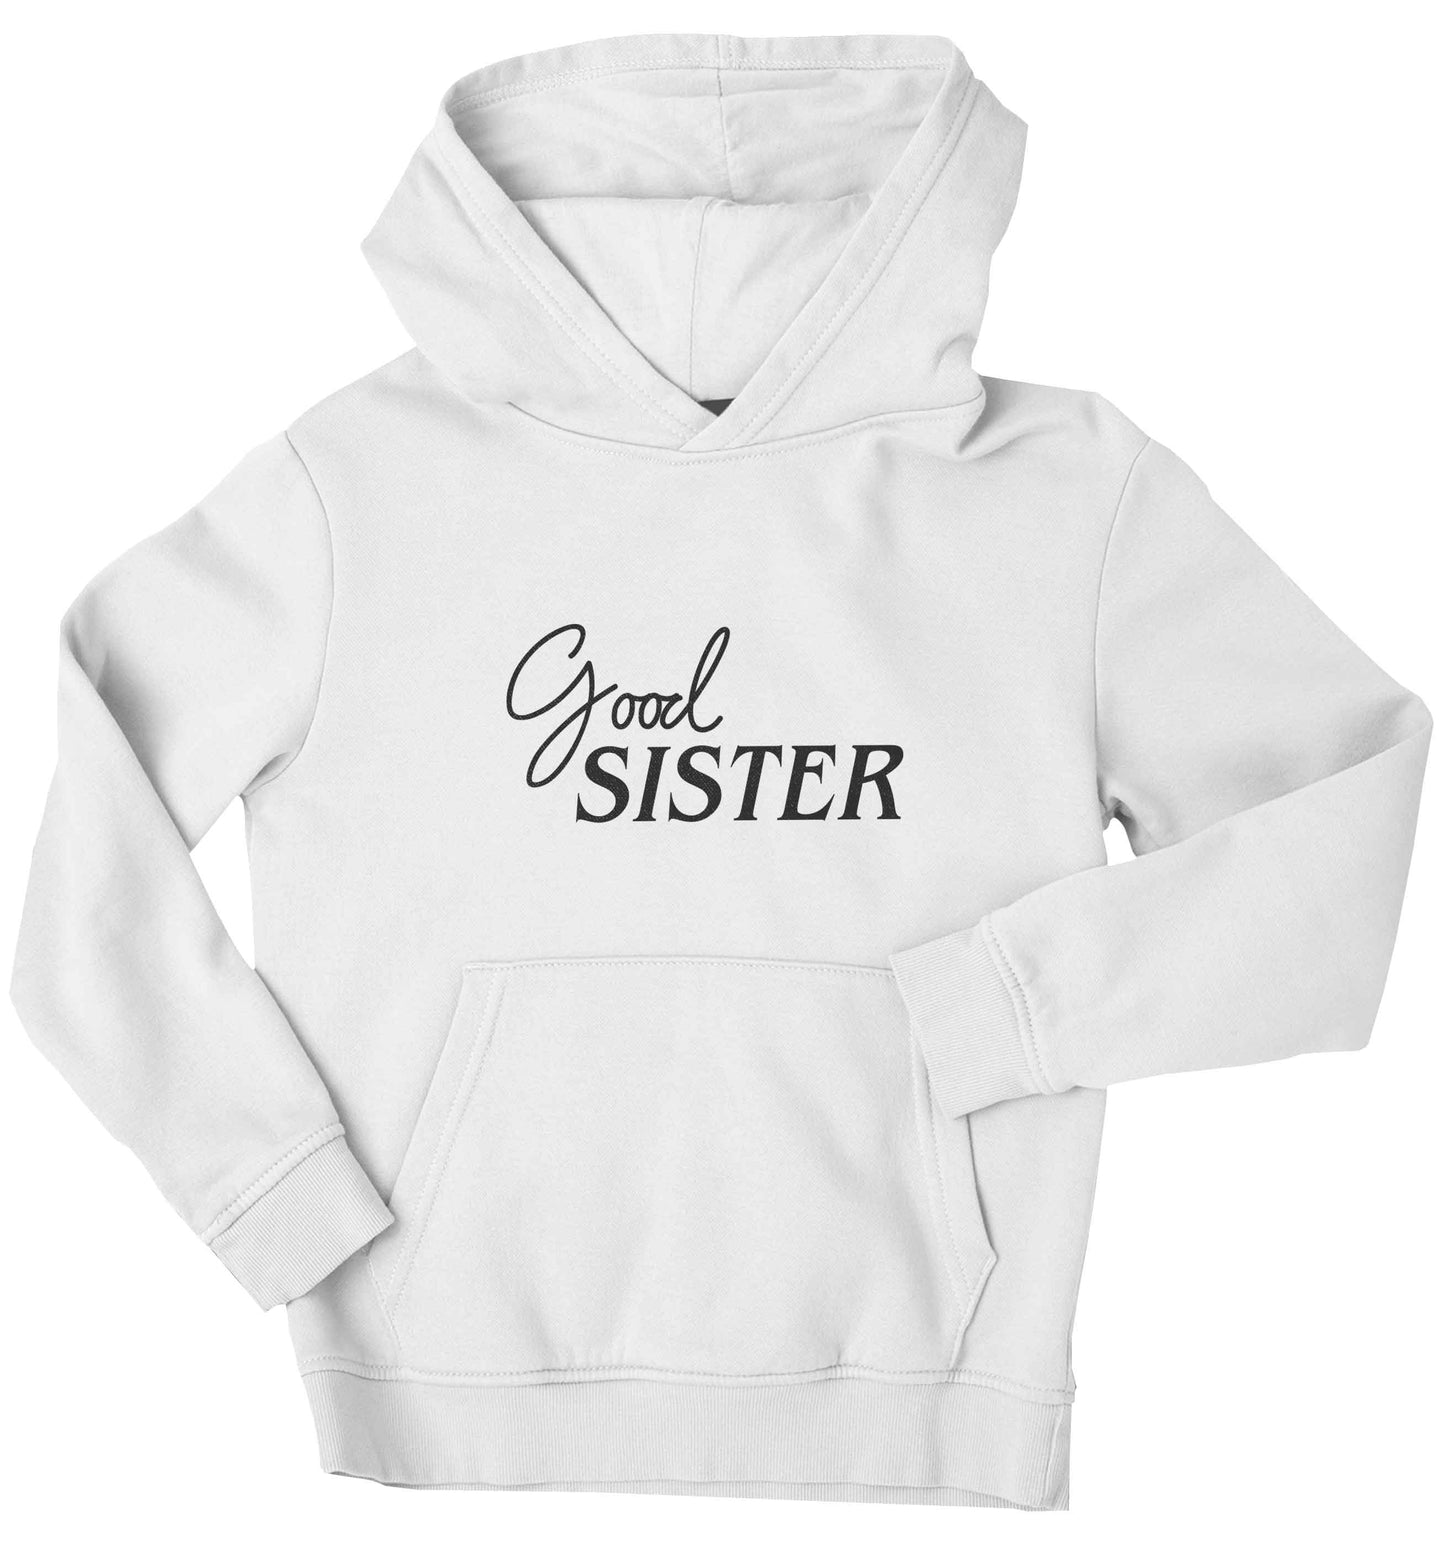 Good sister children's white hoodie 12-13 Years